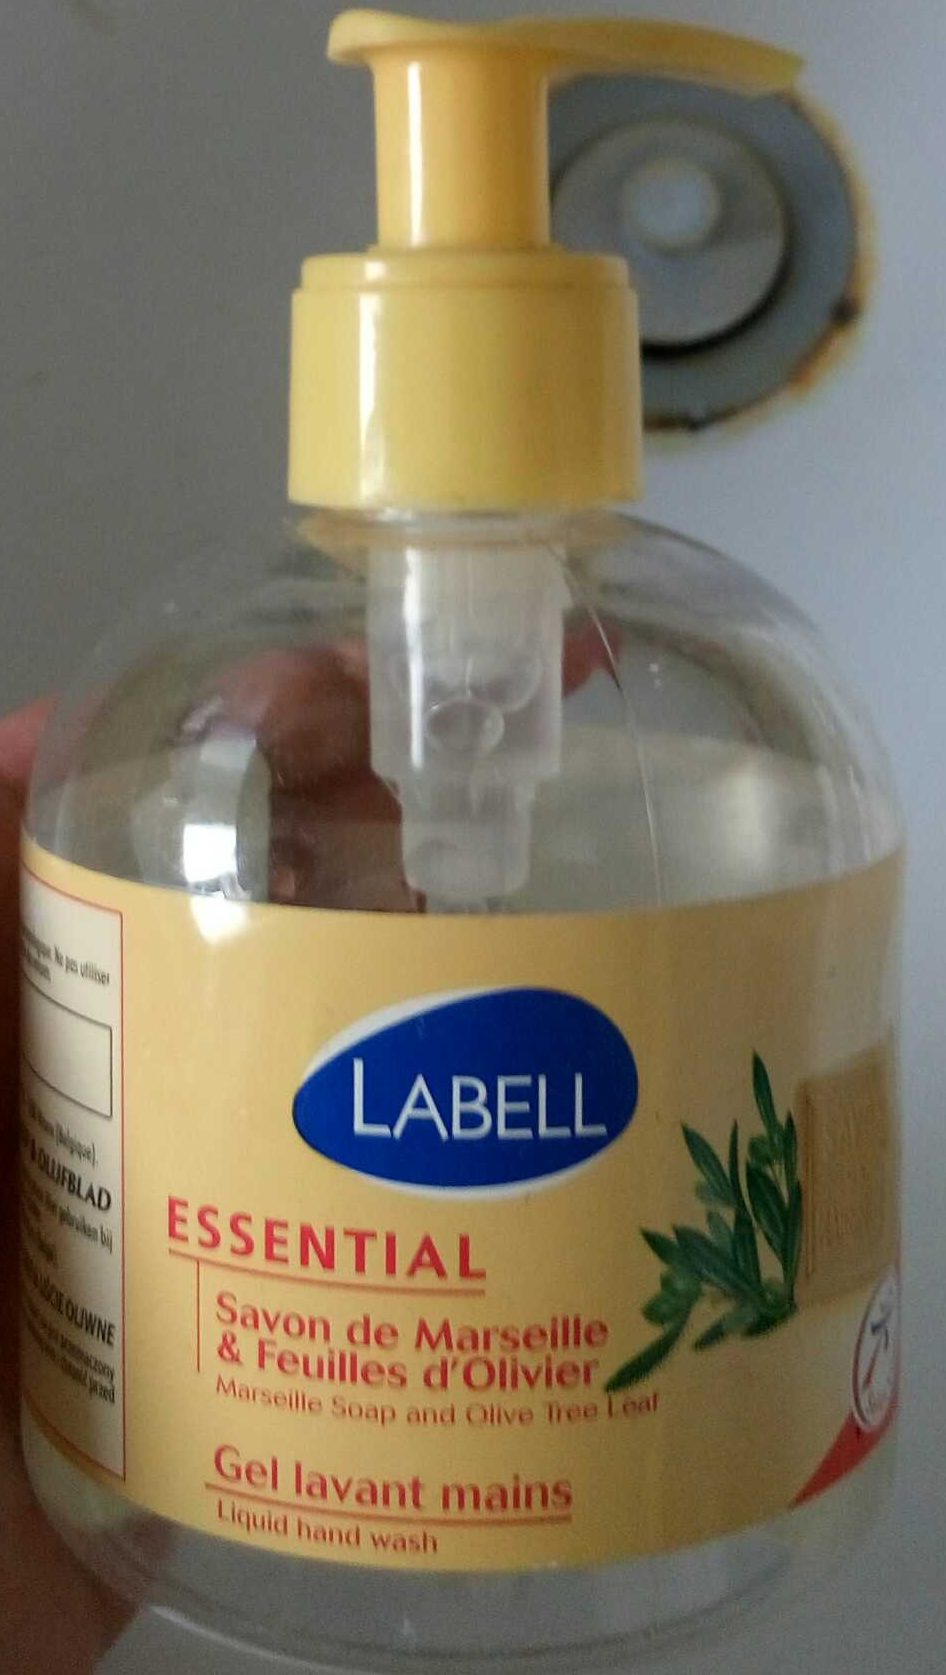 Essential Savon de Marseille & Feuilles d'Olivier Gel lavant mains - Produkt - fr